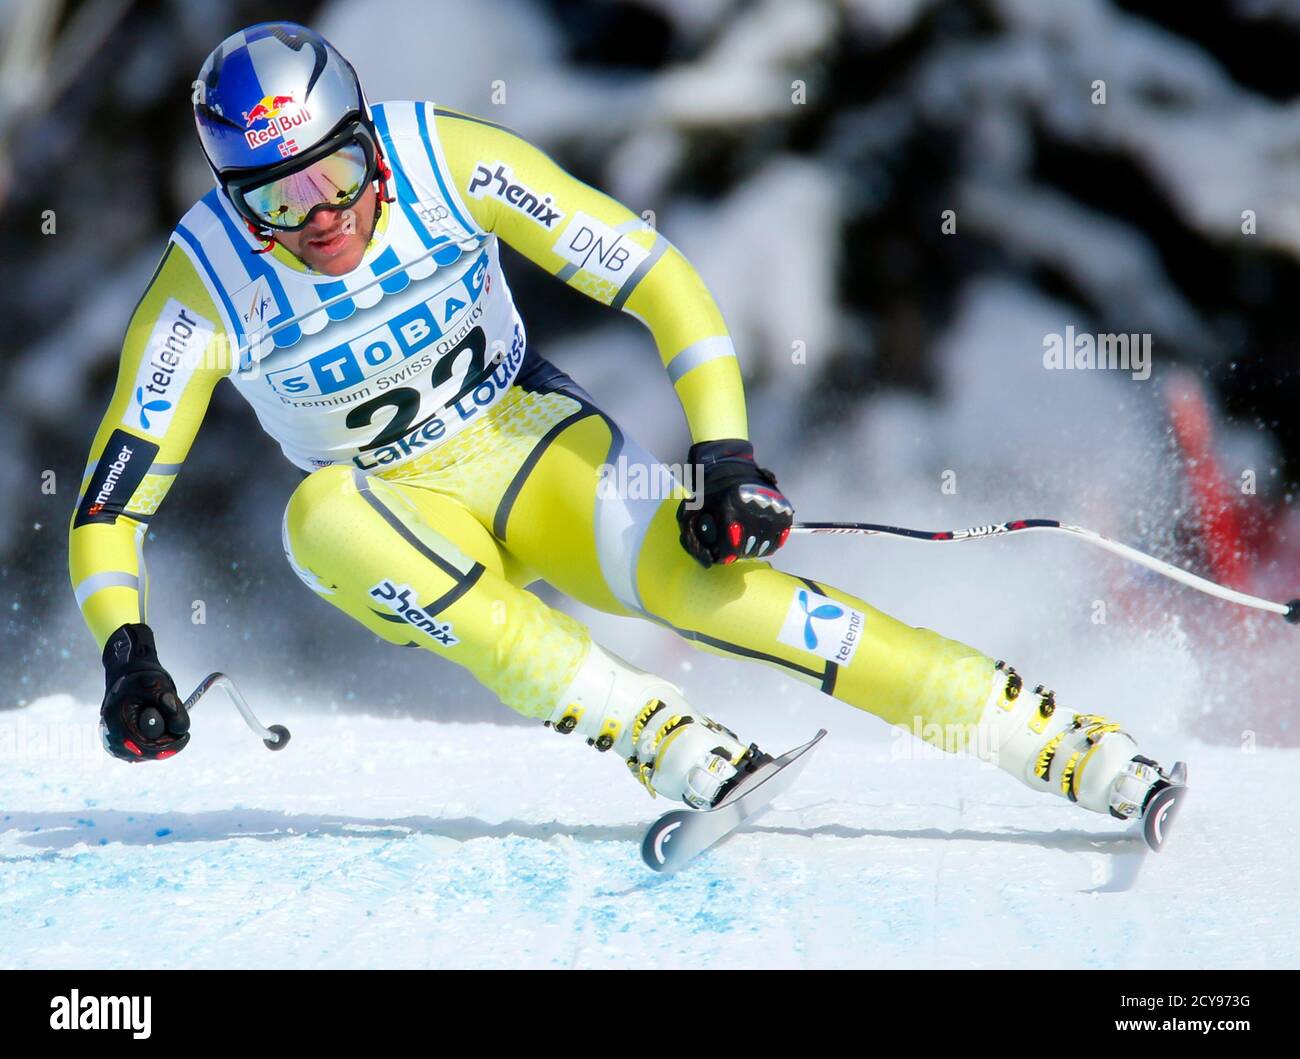 Le skieur norvégien Aksel Lund Svindal remporte la première coupe du monde de ski alpin de la saison à Lake Louise, en Alberta, le 24 novembre 2012. REUTERS/Mike Blake (CANADA - Tags: SKI DE SPORT) Banque D'Images